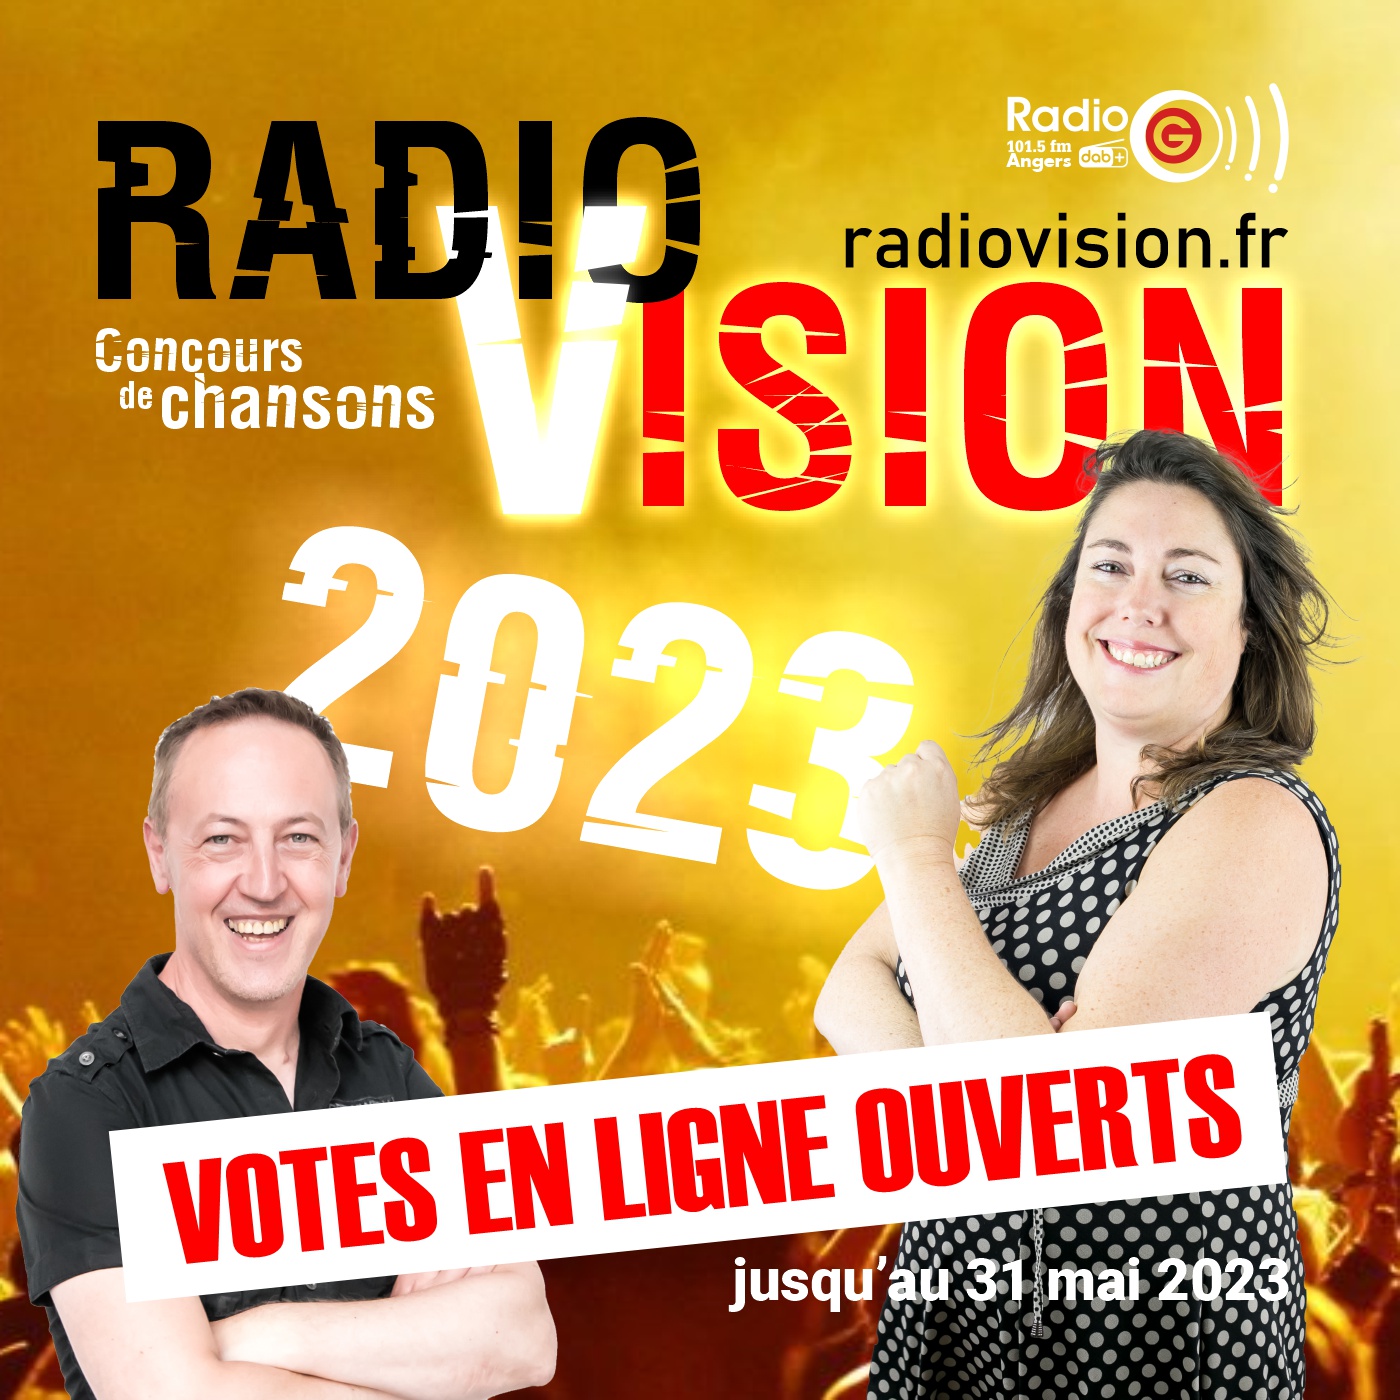 RadioVision Finalistes 2023 RadioVision Finalistes 2023